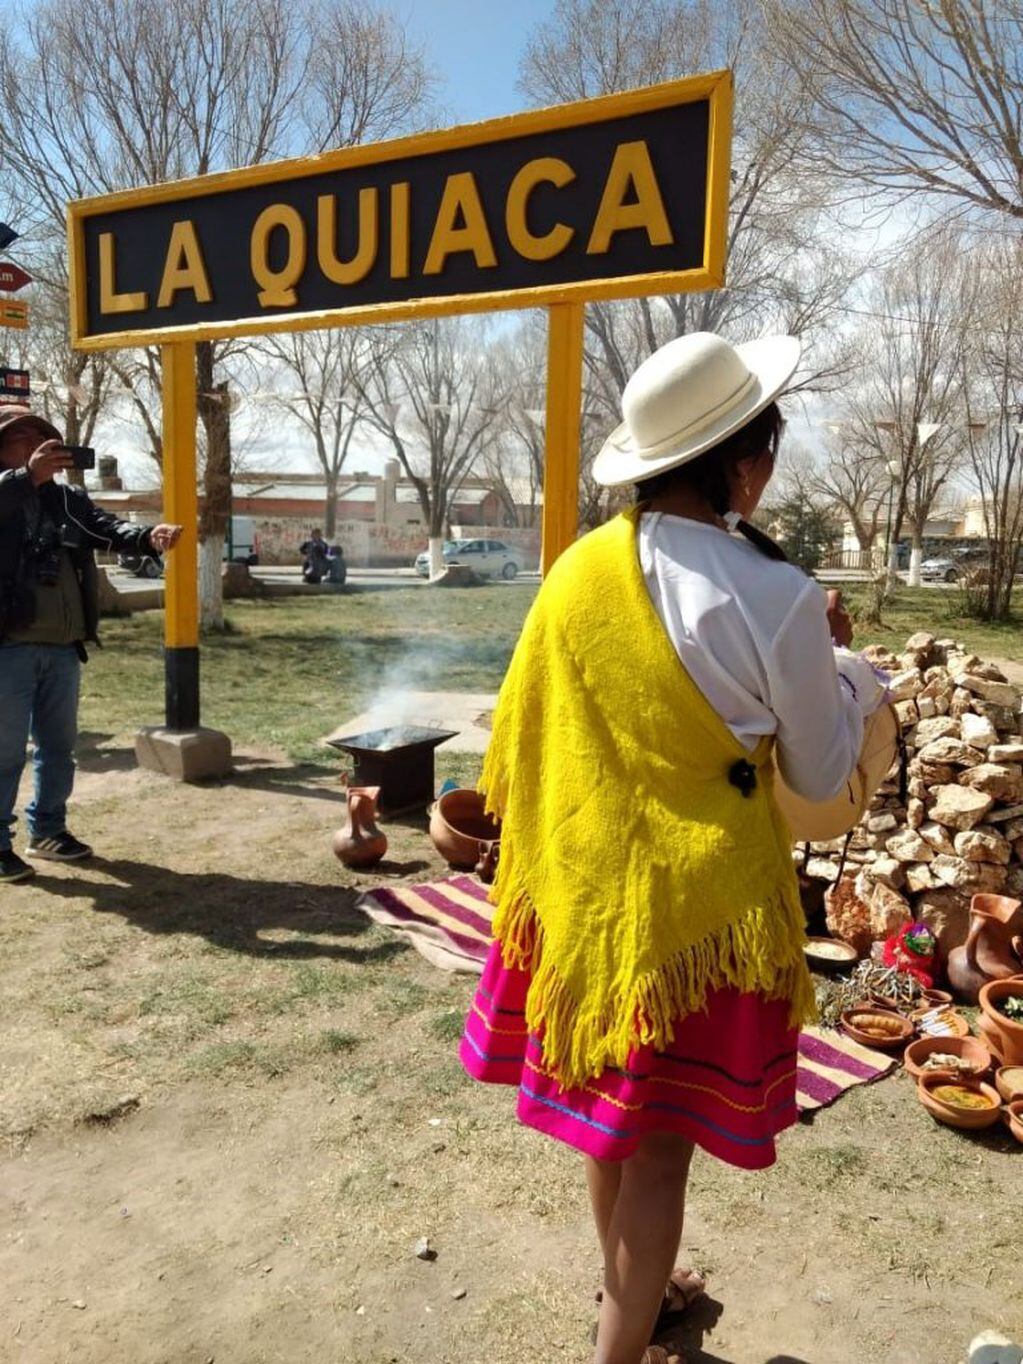 La fronteriza ciudad de La Quiaca no olvida sus tradiciones.